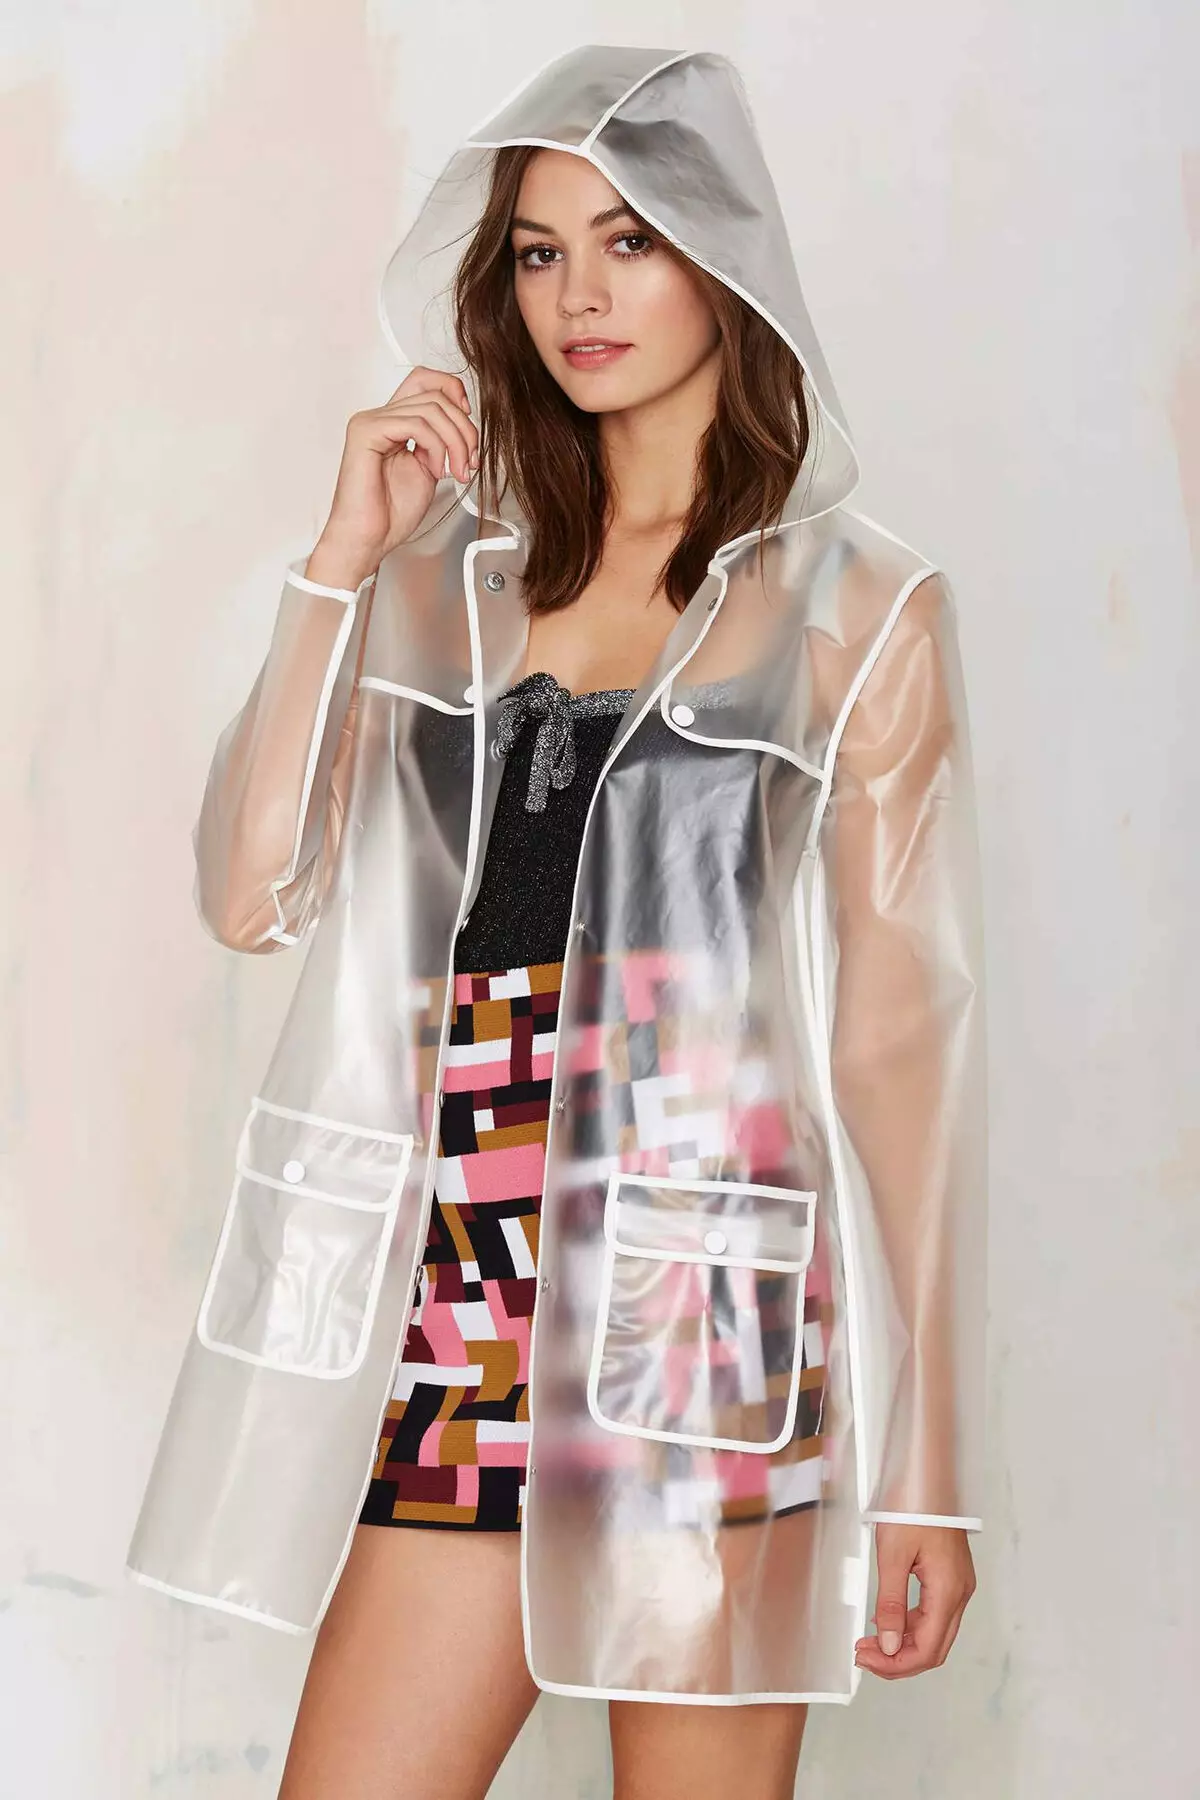 Transparent Raincoat (36 sary): Modely tselatra vehivavy 14305_26